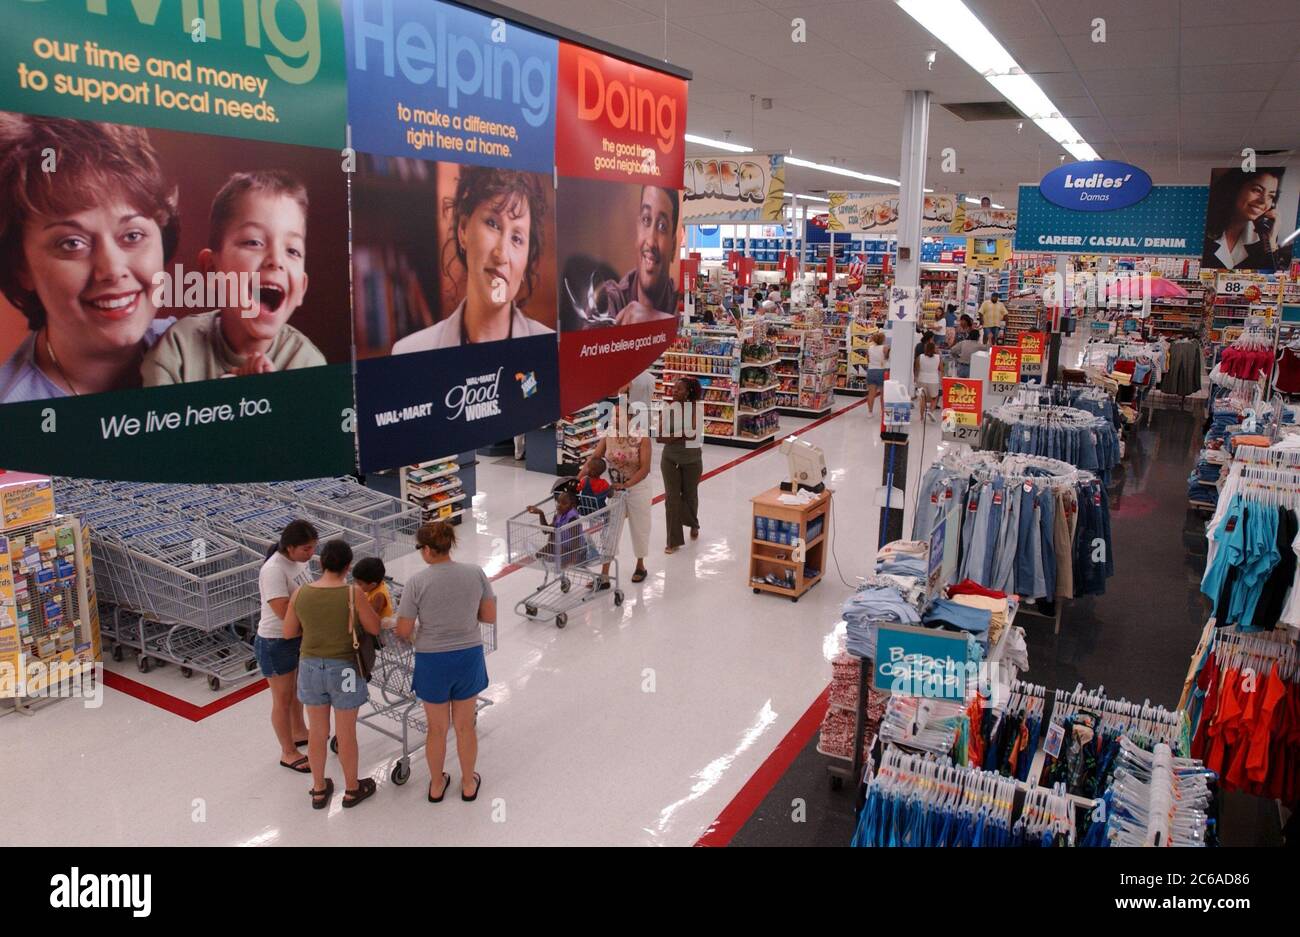 Austin, Texas, USA, 11. Juli 2003: Das Innere des Wal-Mart-Stores zeigt Banner, auf denen die Spenden des Unternehmens an gemeinnützige Organisationen vor Ort beworben werden. ©Bob Daemmrich Stockfoto